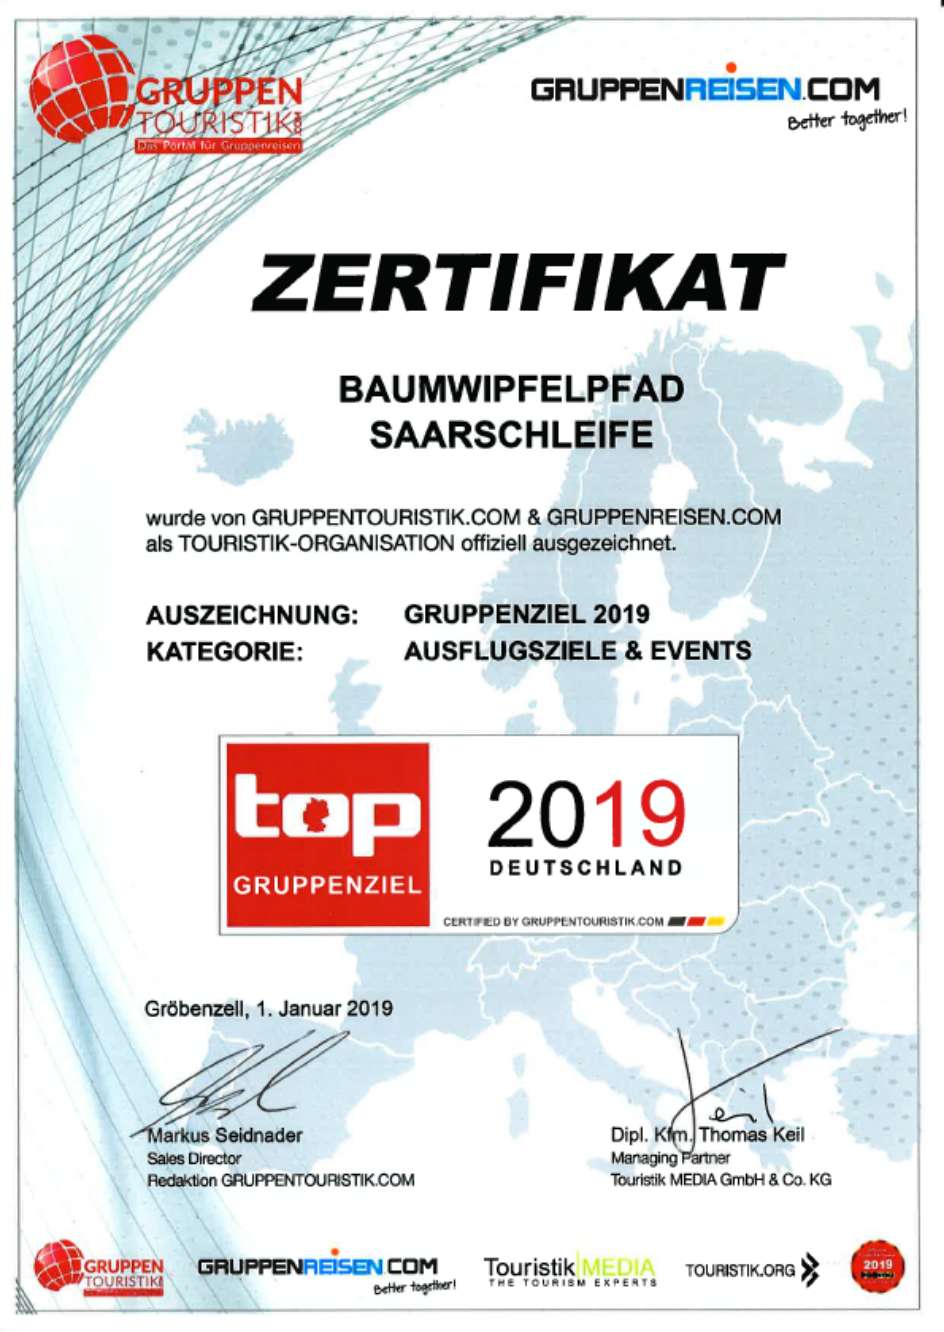 Der Baumwipfelpfad Saarschleife wurde von Gruppentouristik.com als Gruppenziel 2019 ausgezeichnet.